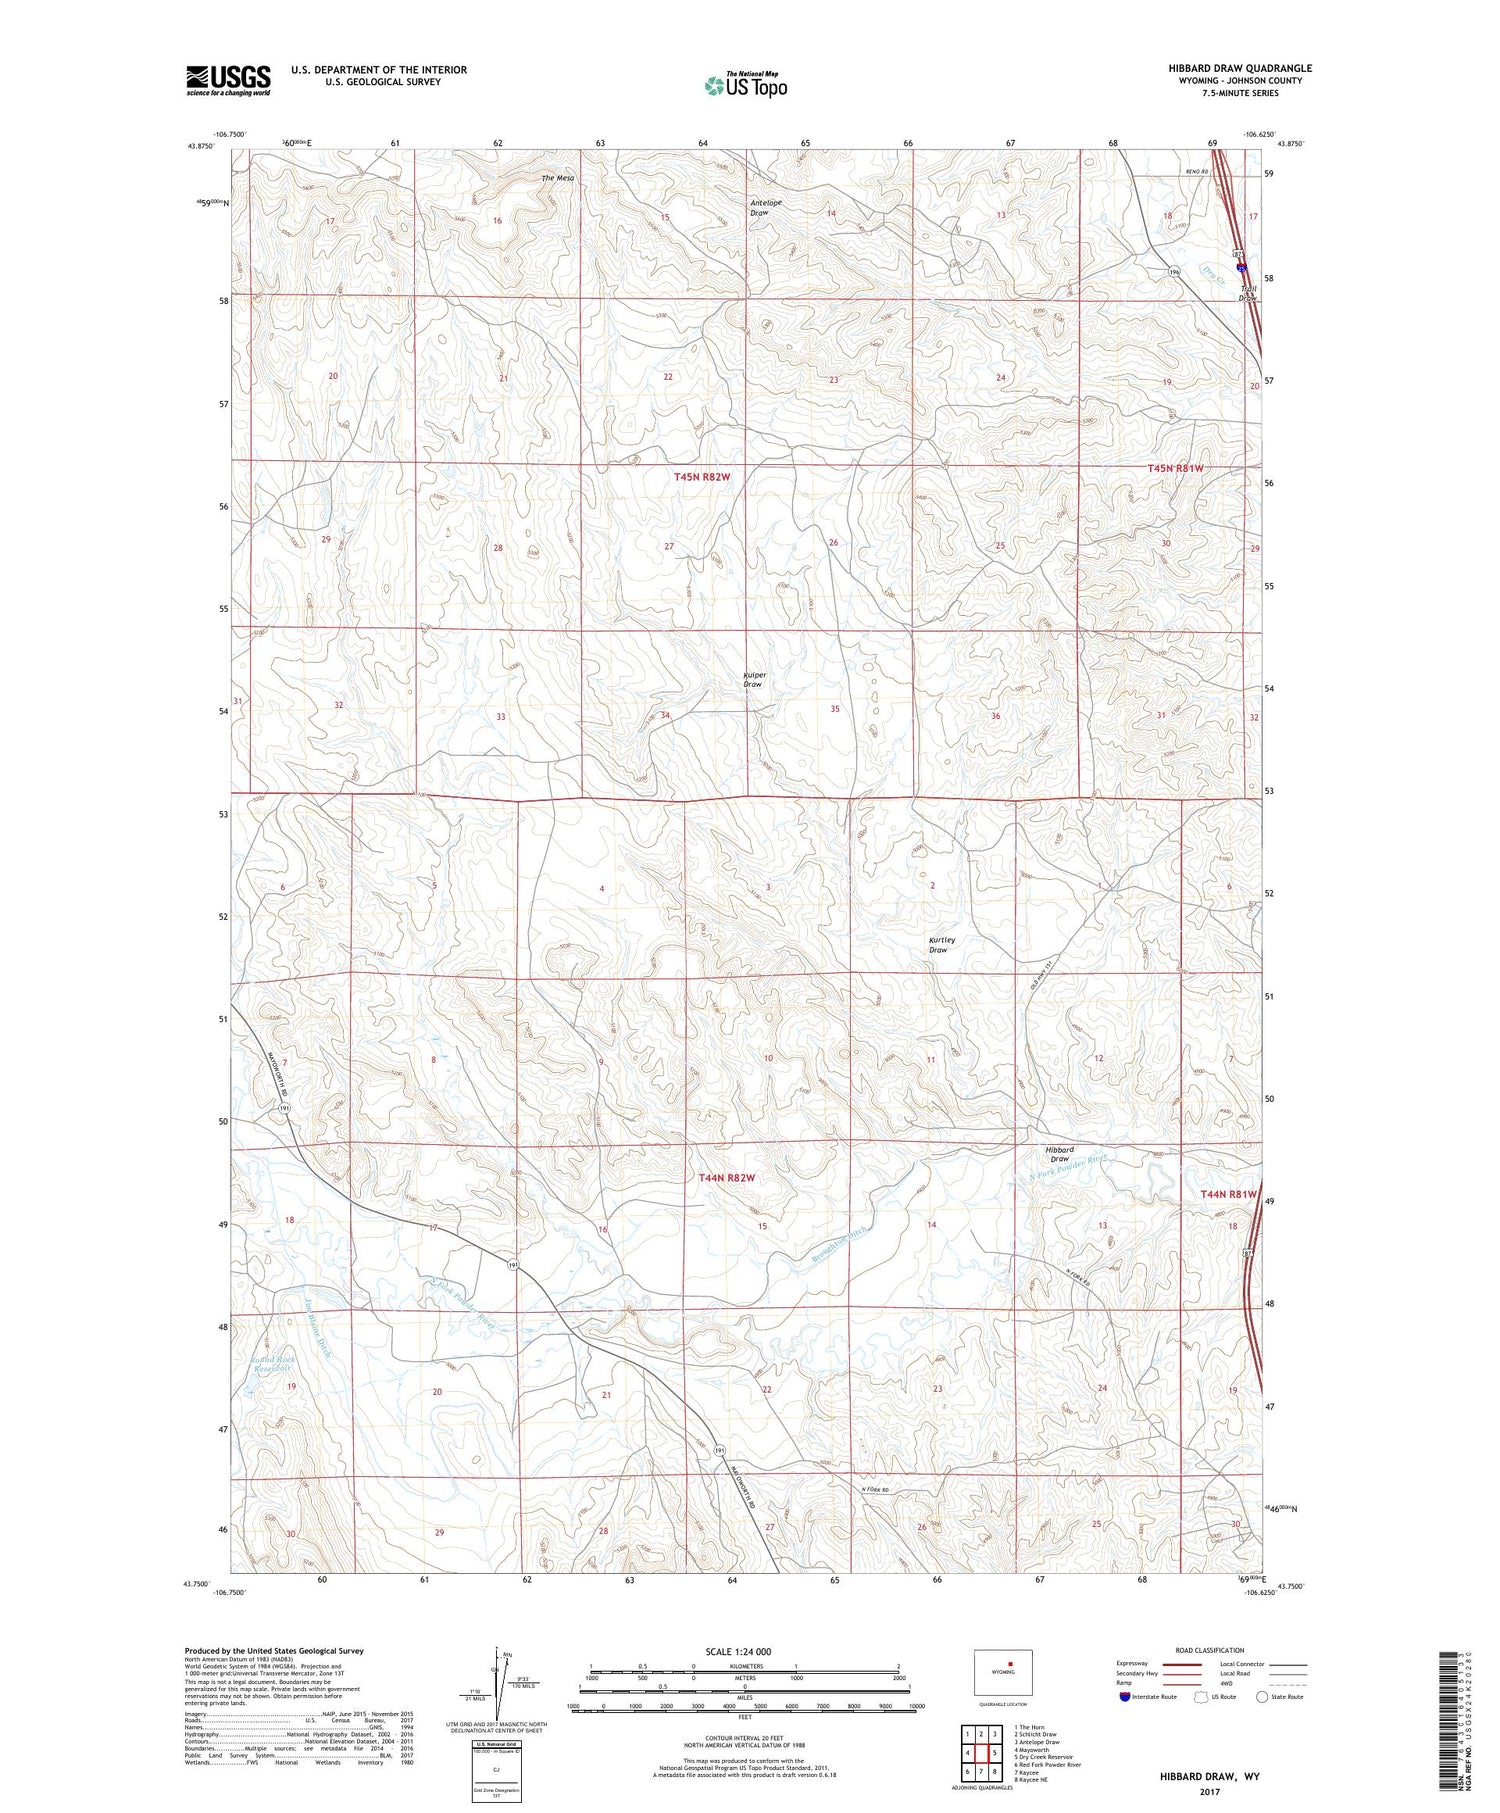 Hibbard Draw Wyoming US Topo Map Image